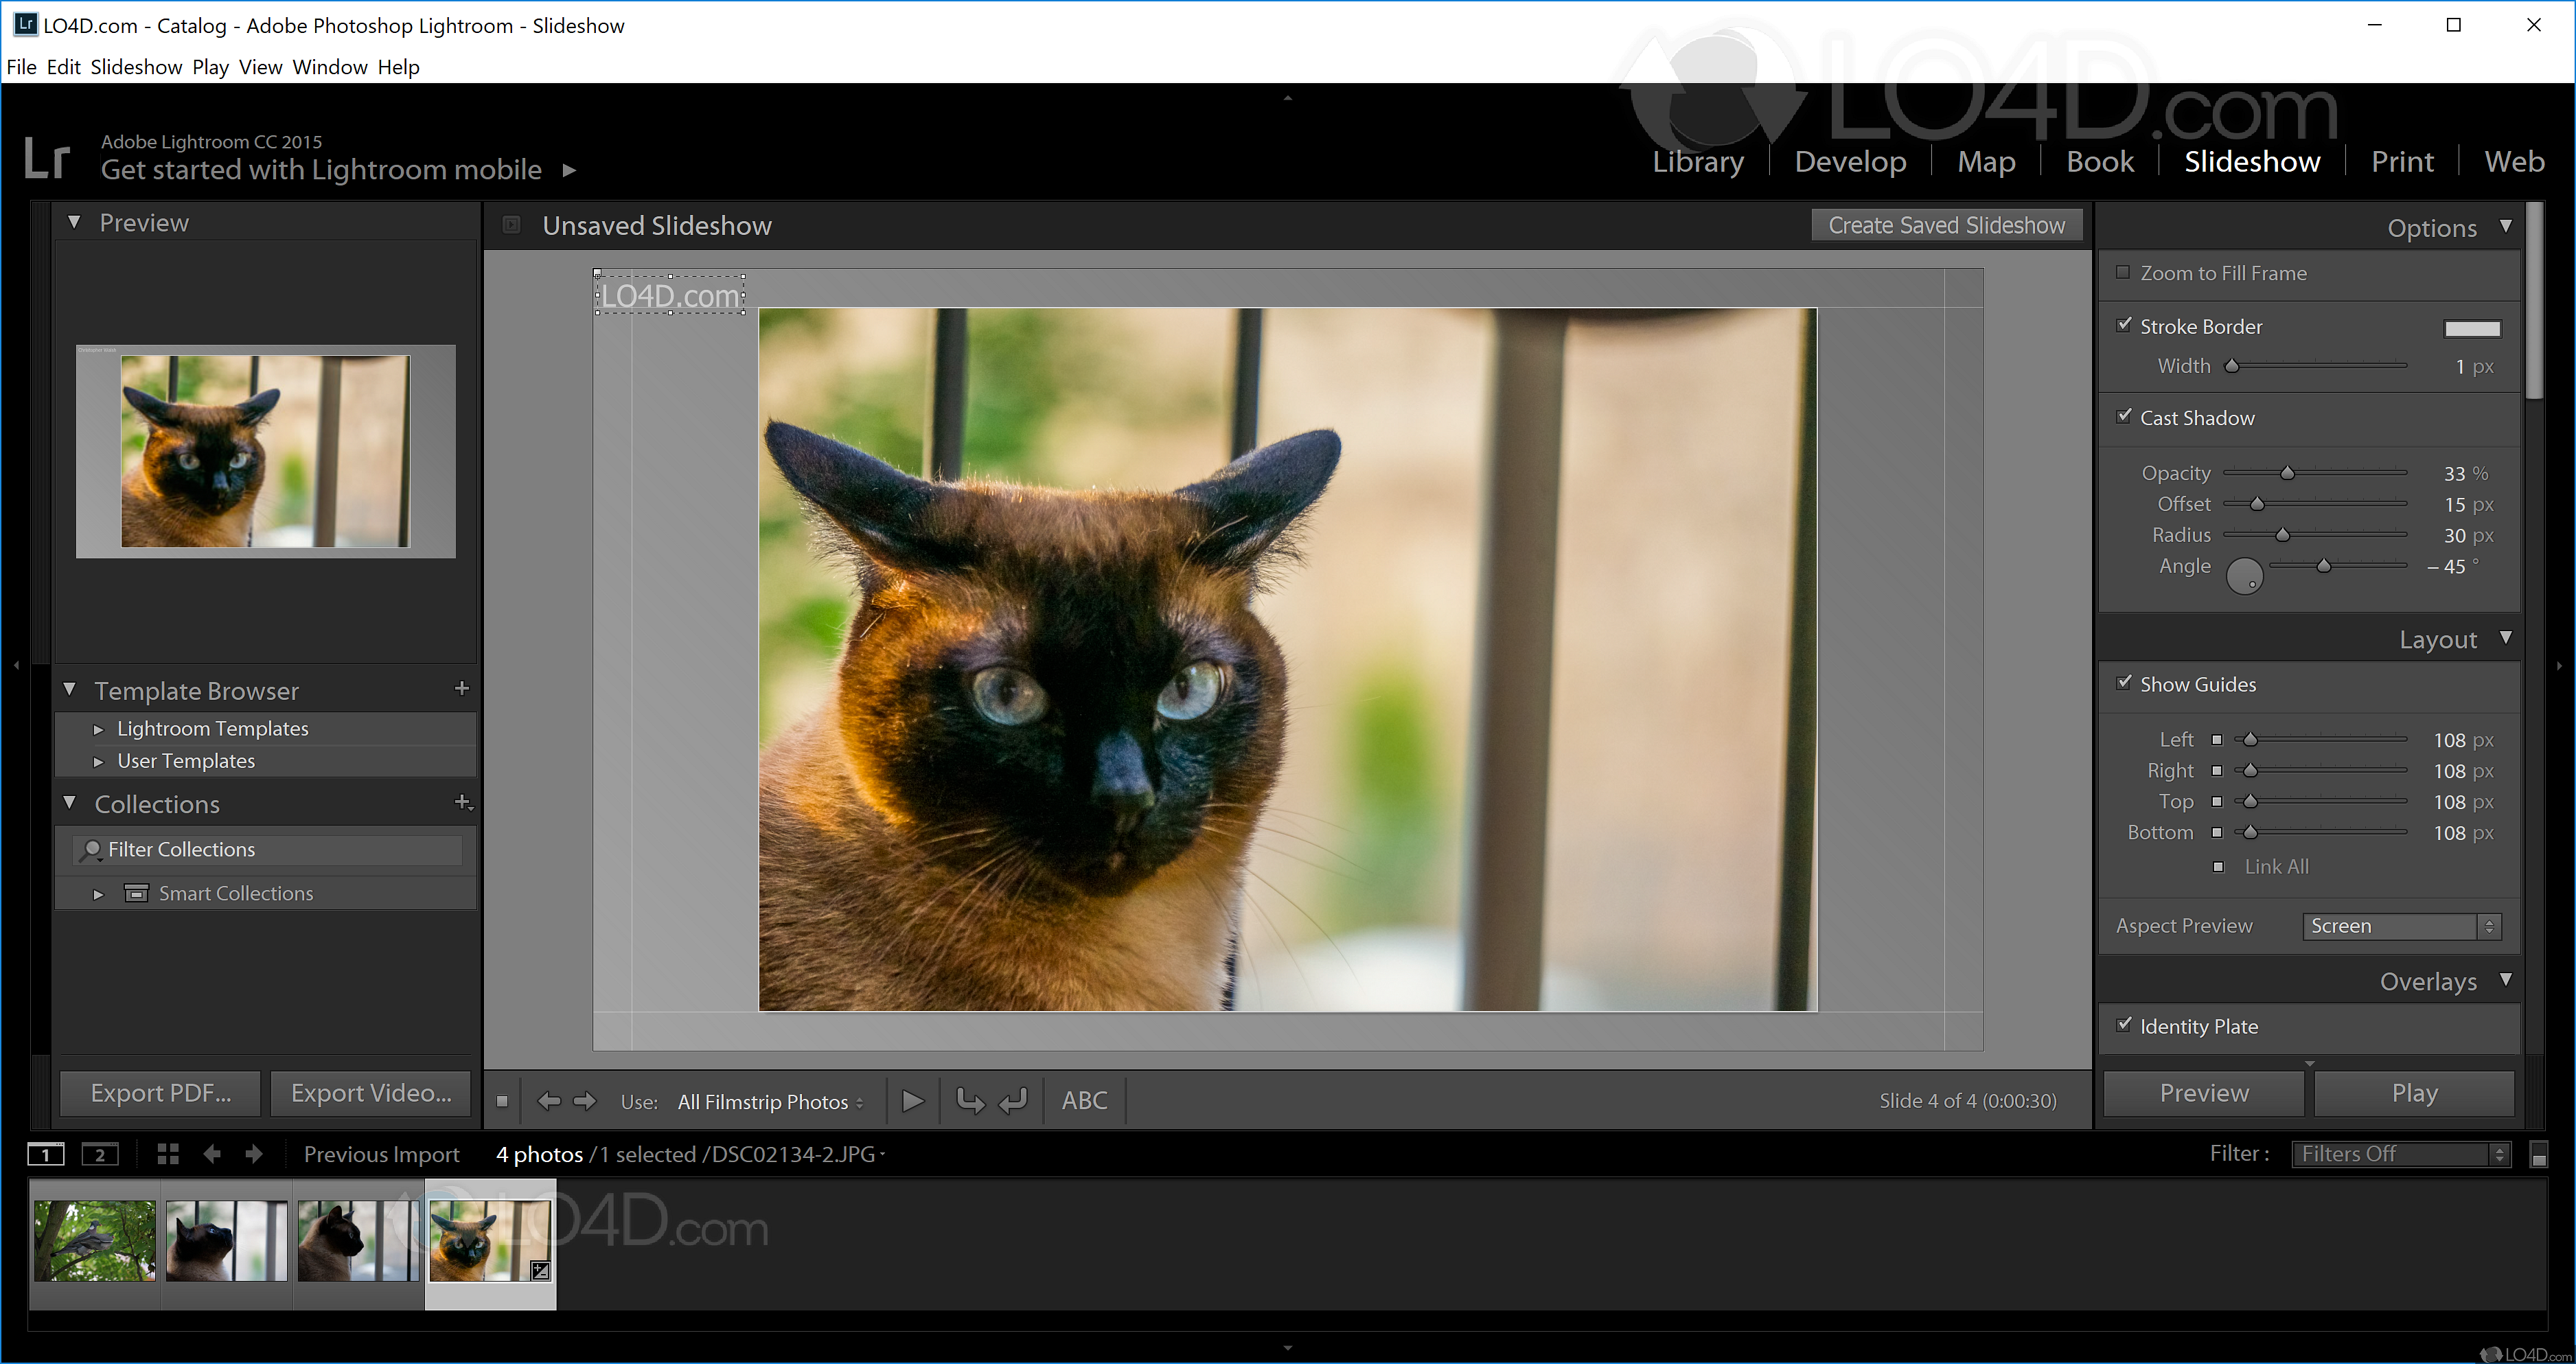 adobe photoshop windows 8.1 64 bit download